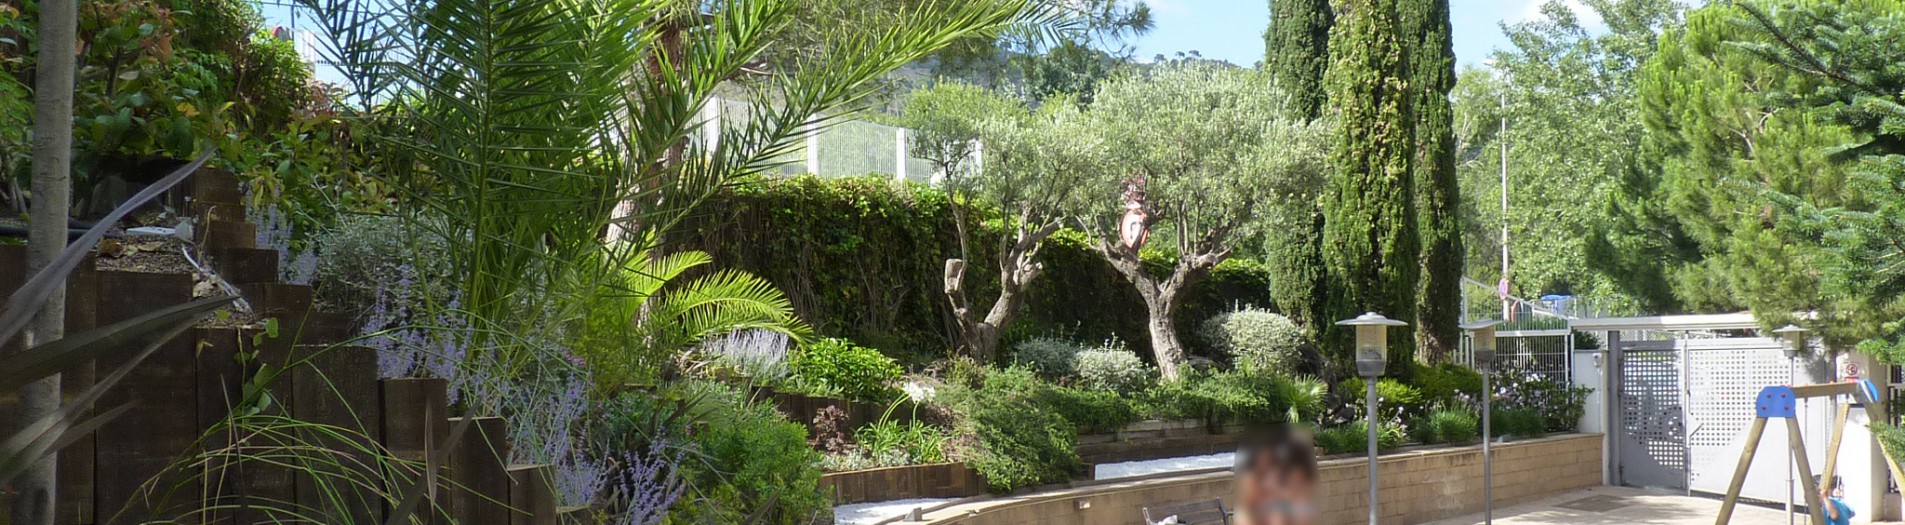 Jardín comunitario en Esplugues